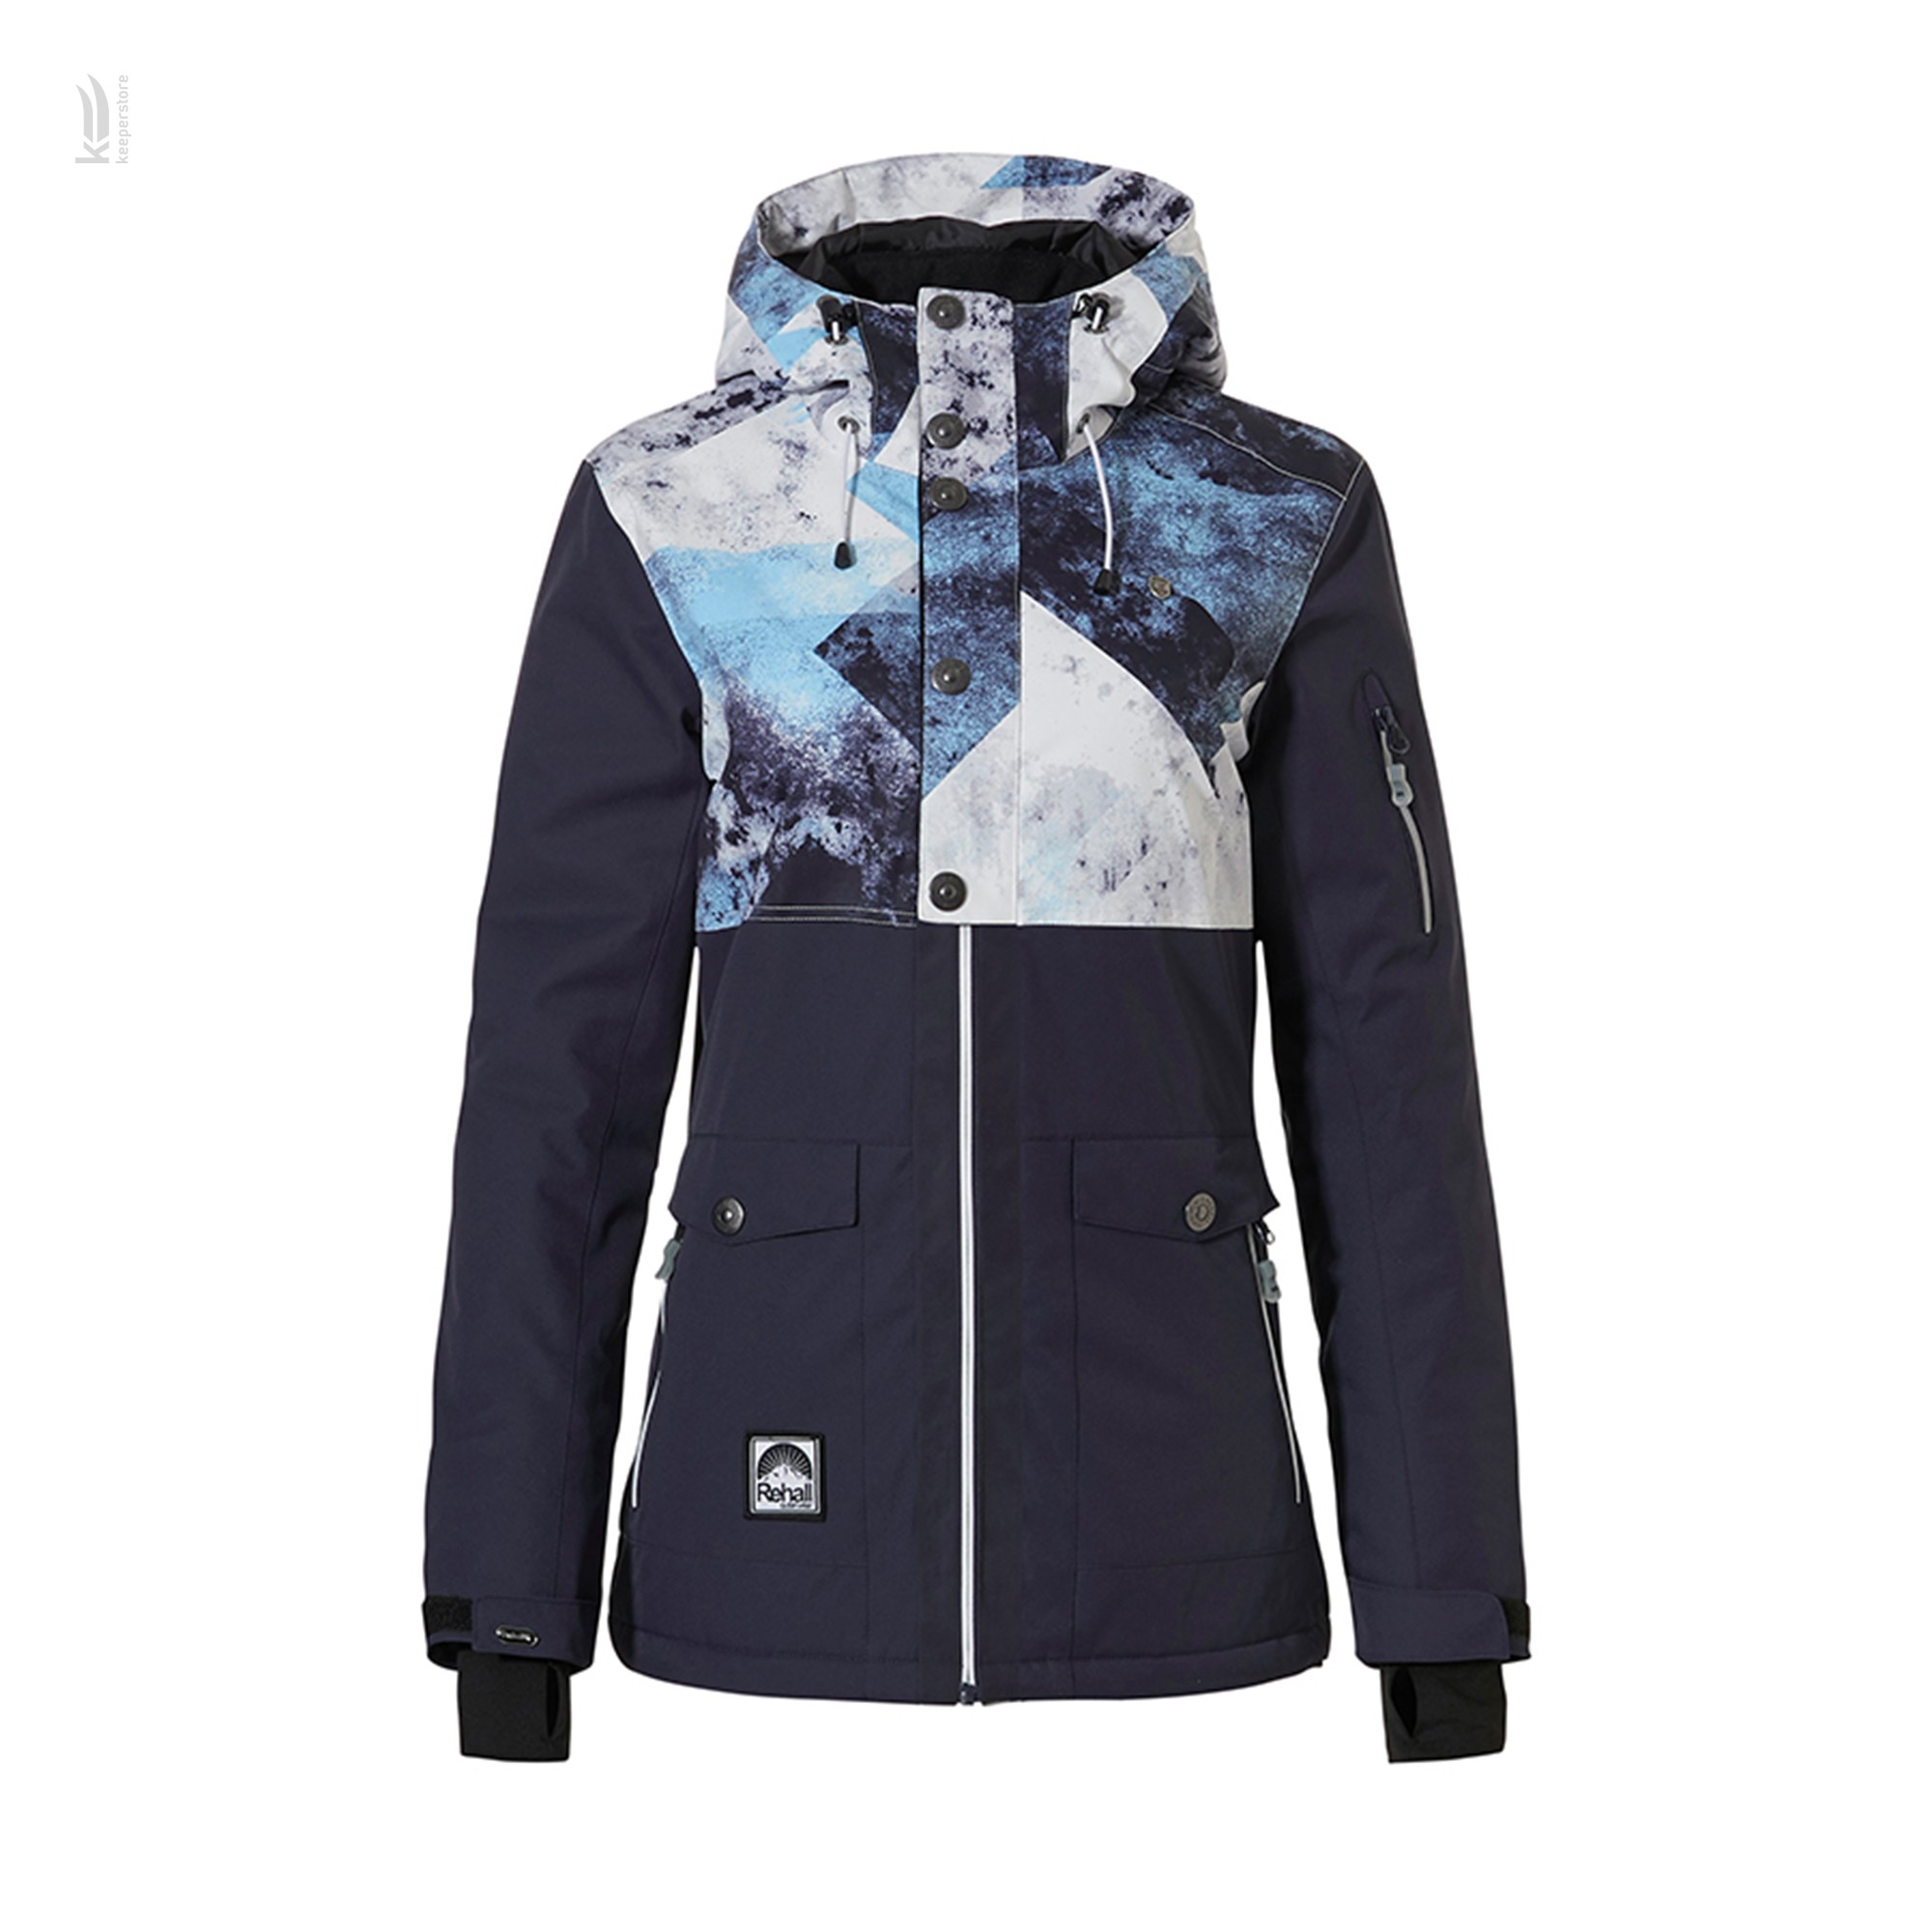 Куртка Rehall EMMY-R Snowjacket Womens Navy (S) купить в Киеве